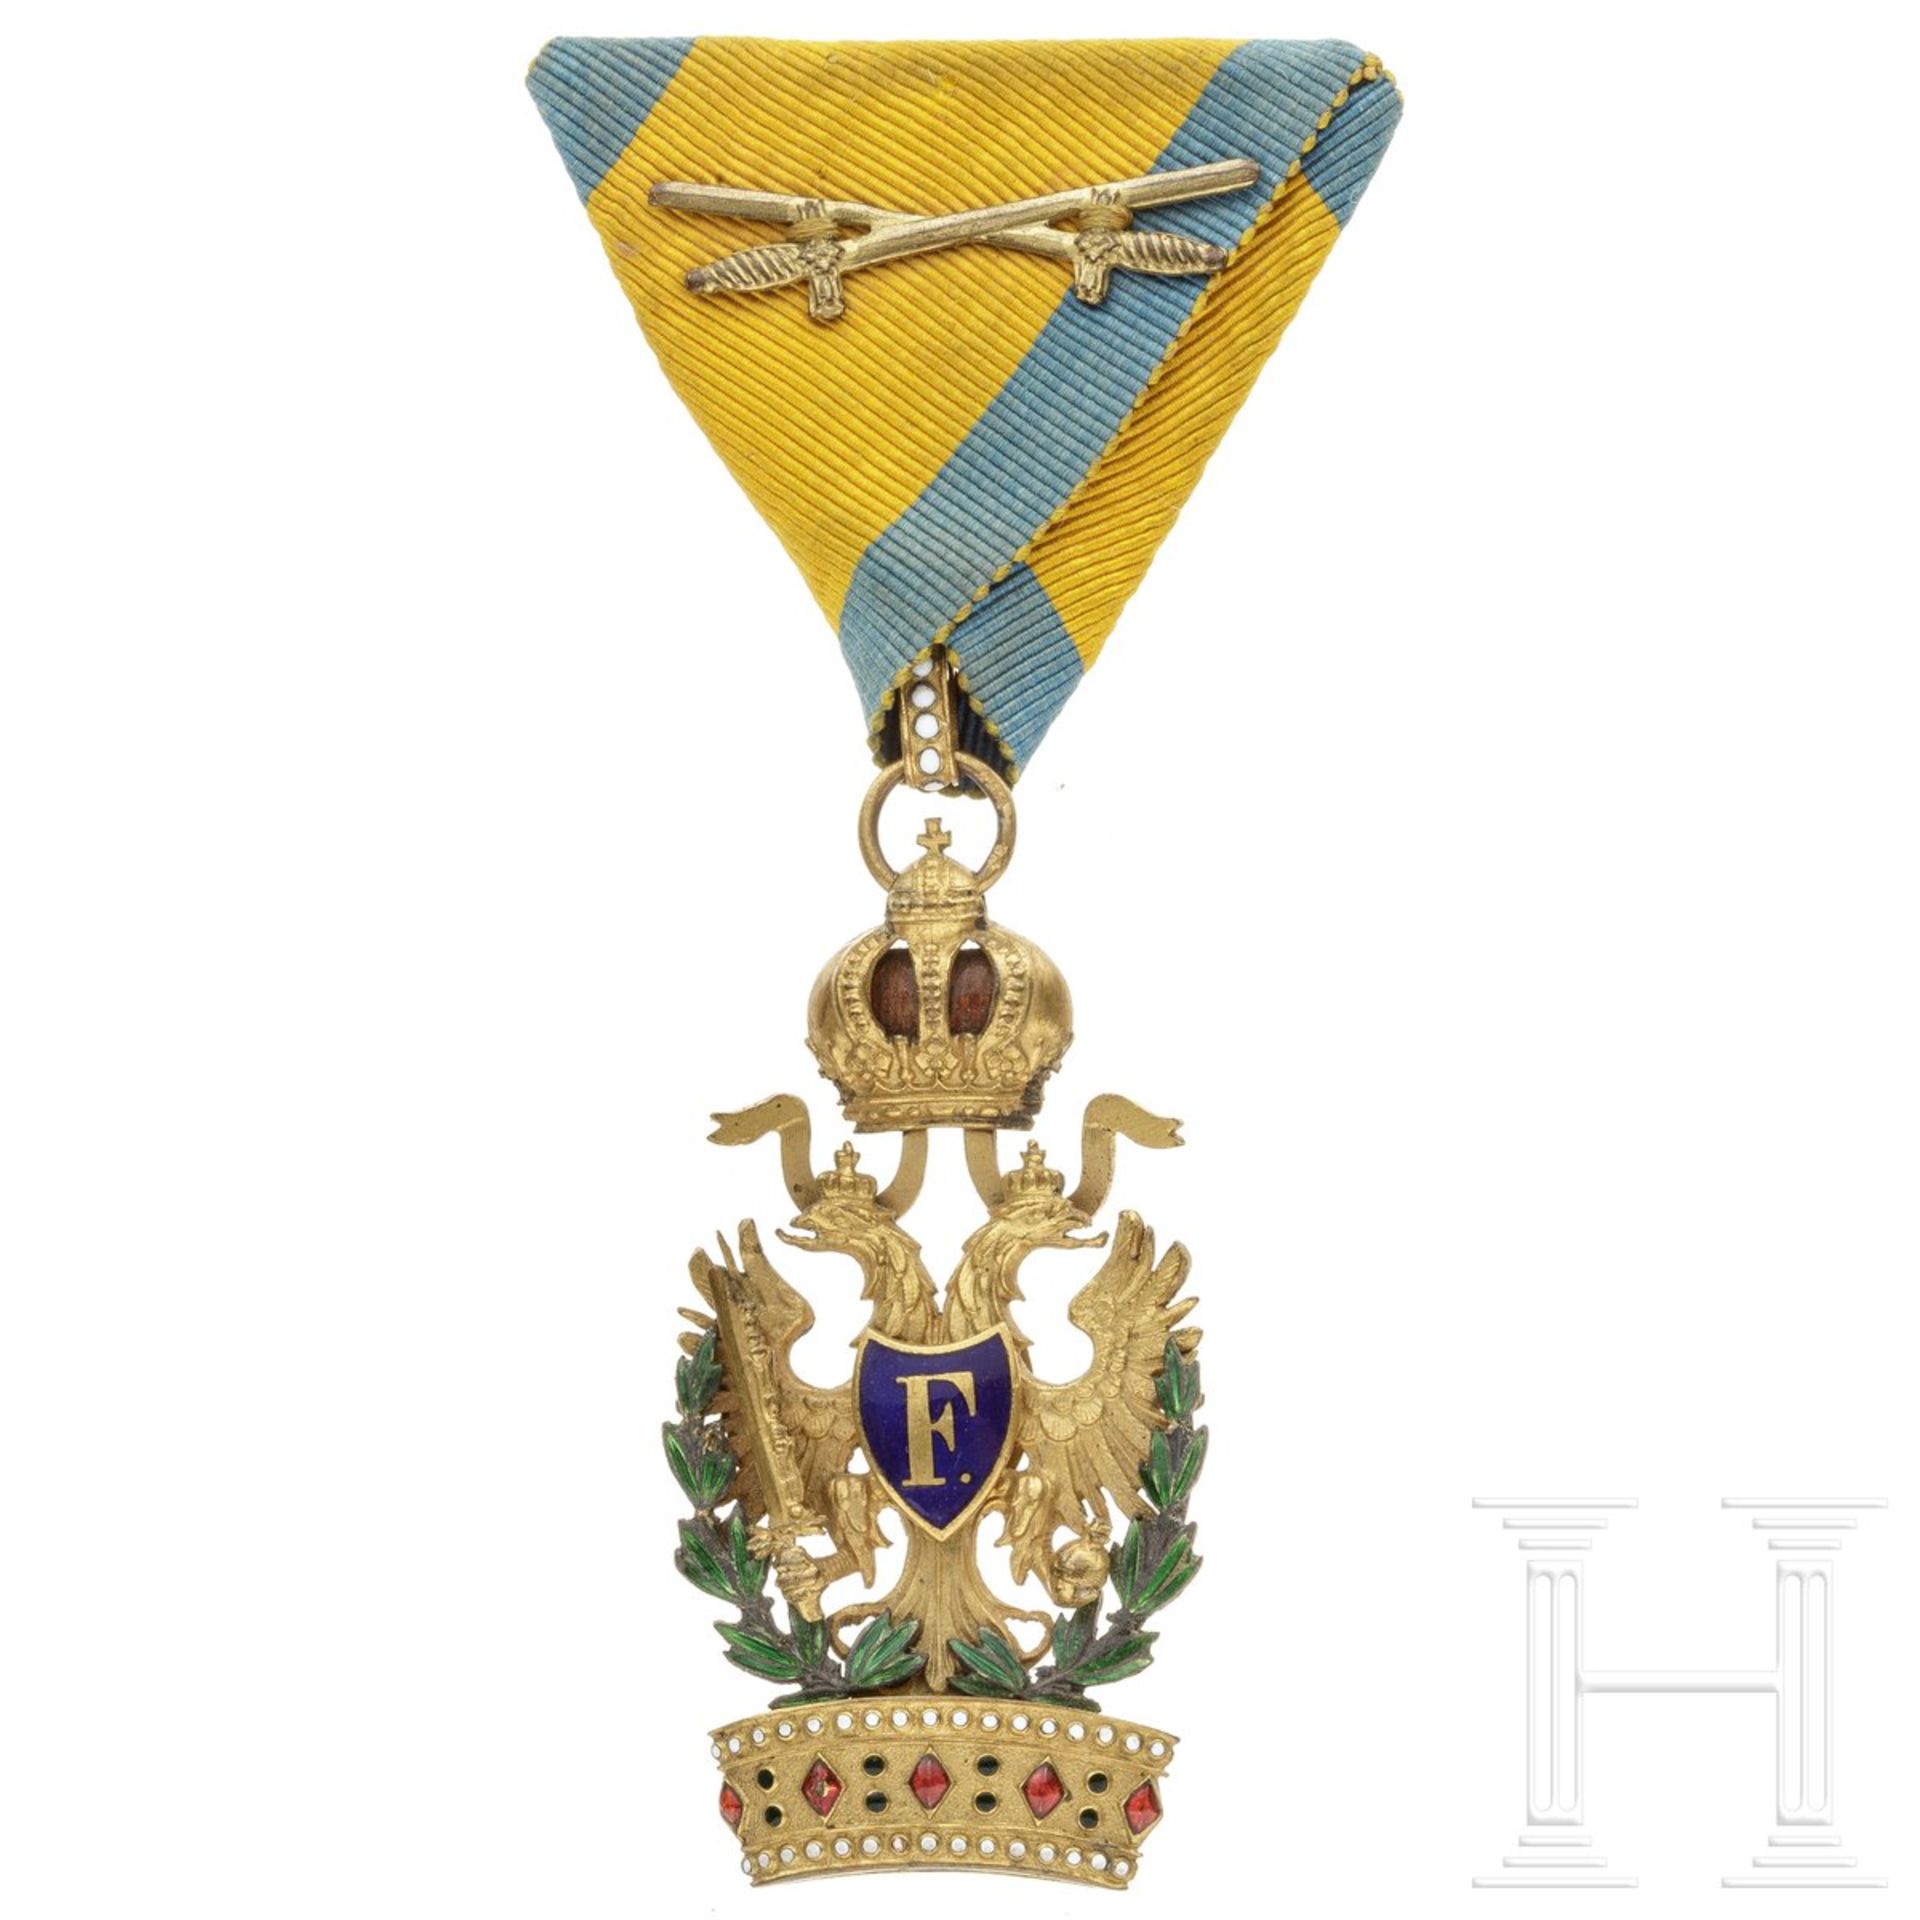 Kaiserlich österreichischer Orden der Eisernen Krone, 3. Klasse (Ritterkreuz), mit Kriegsdekorat